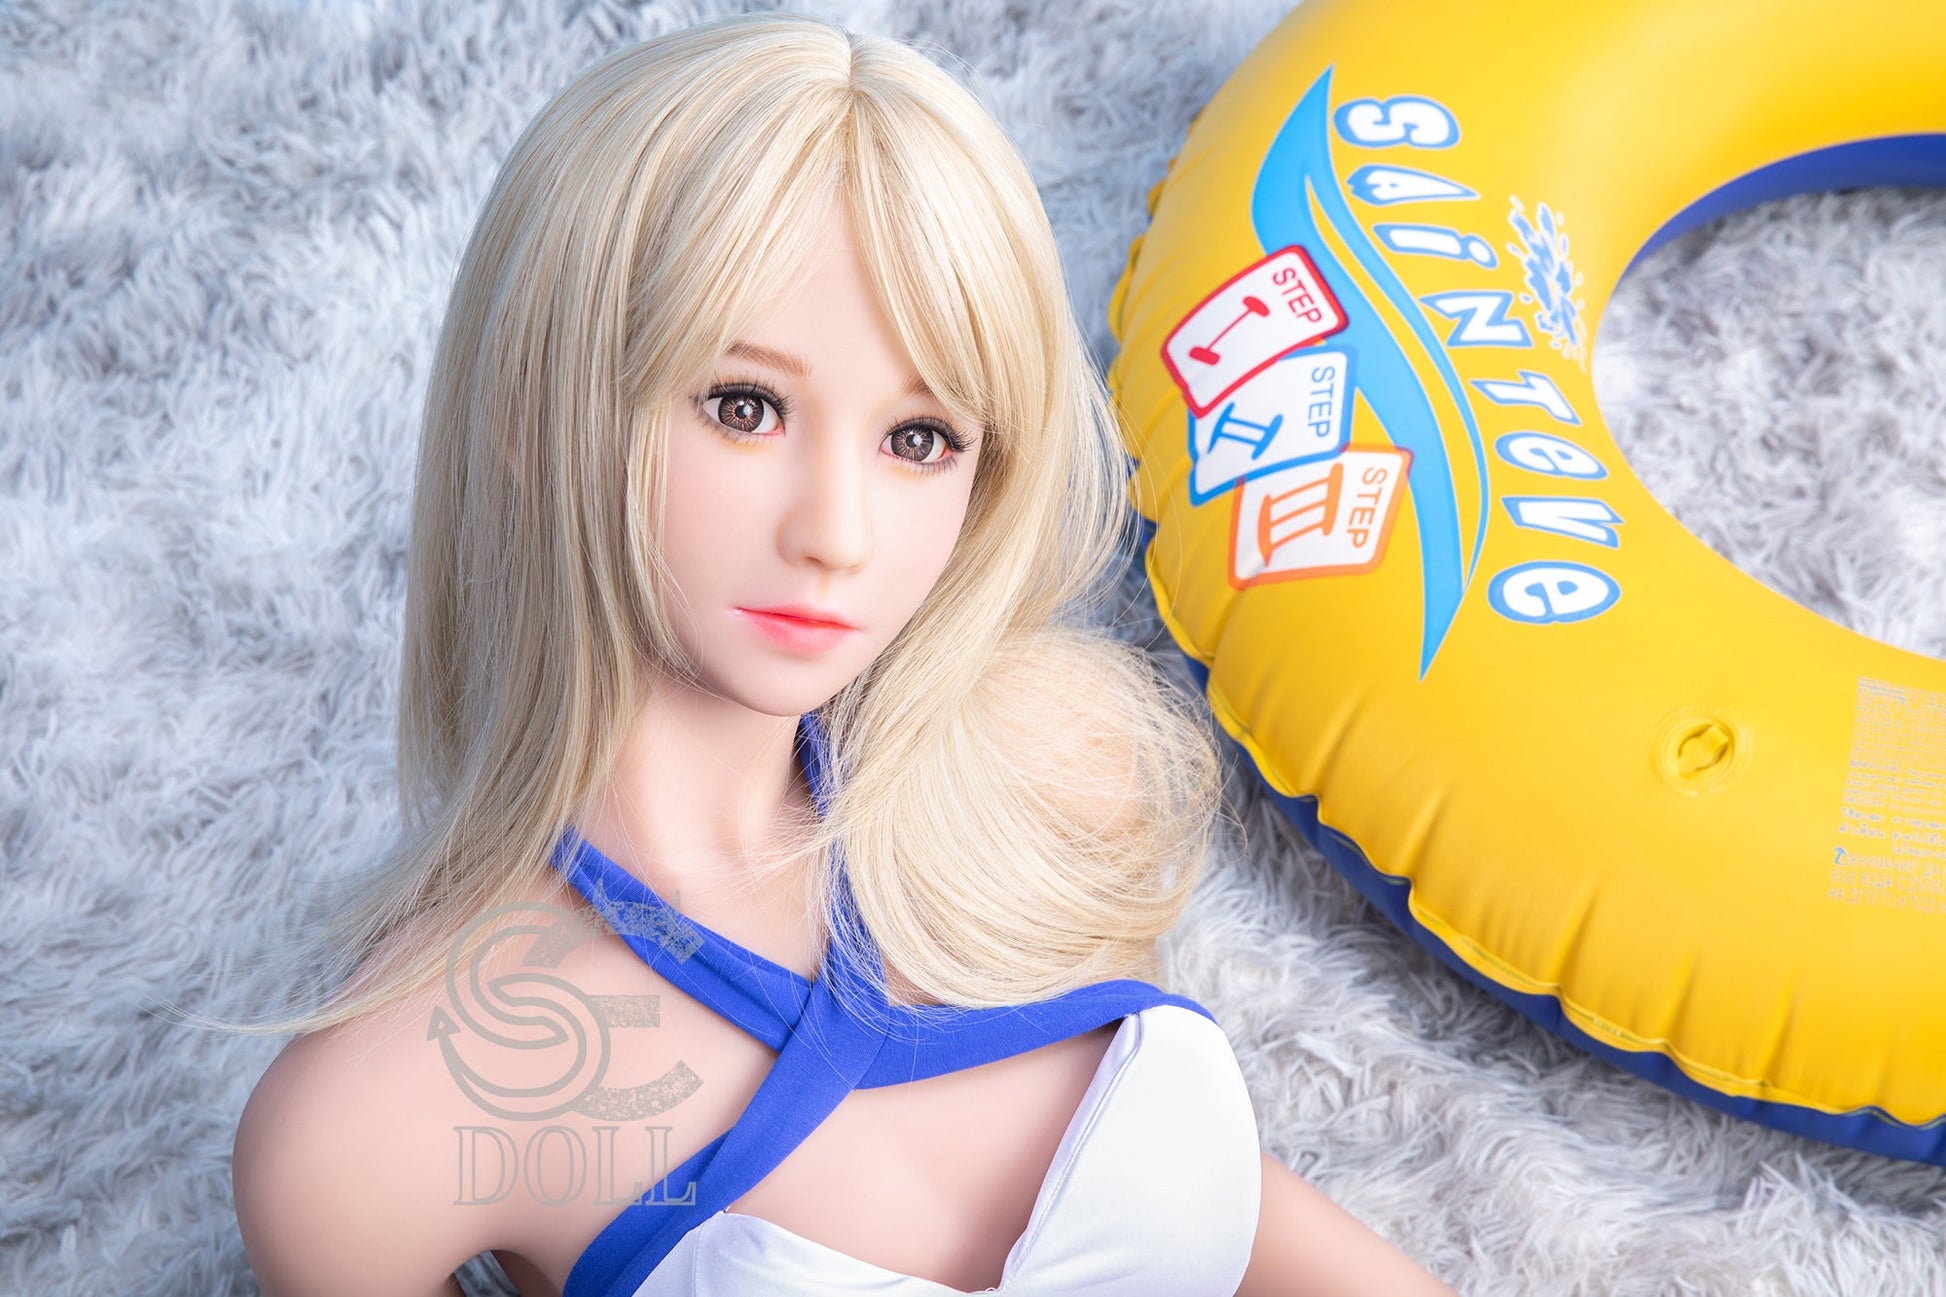 SE Doll - 166 cm C Cup TPE Doll - Cynthia (5ft 5in) - Love Dolls 4U